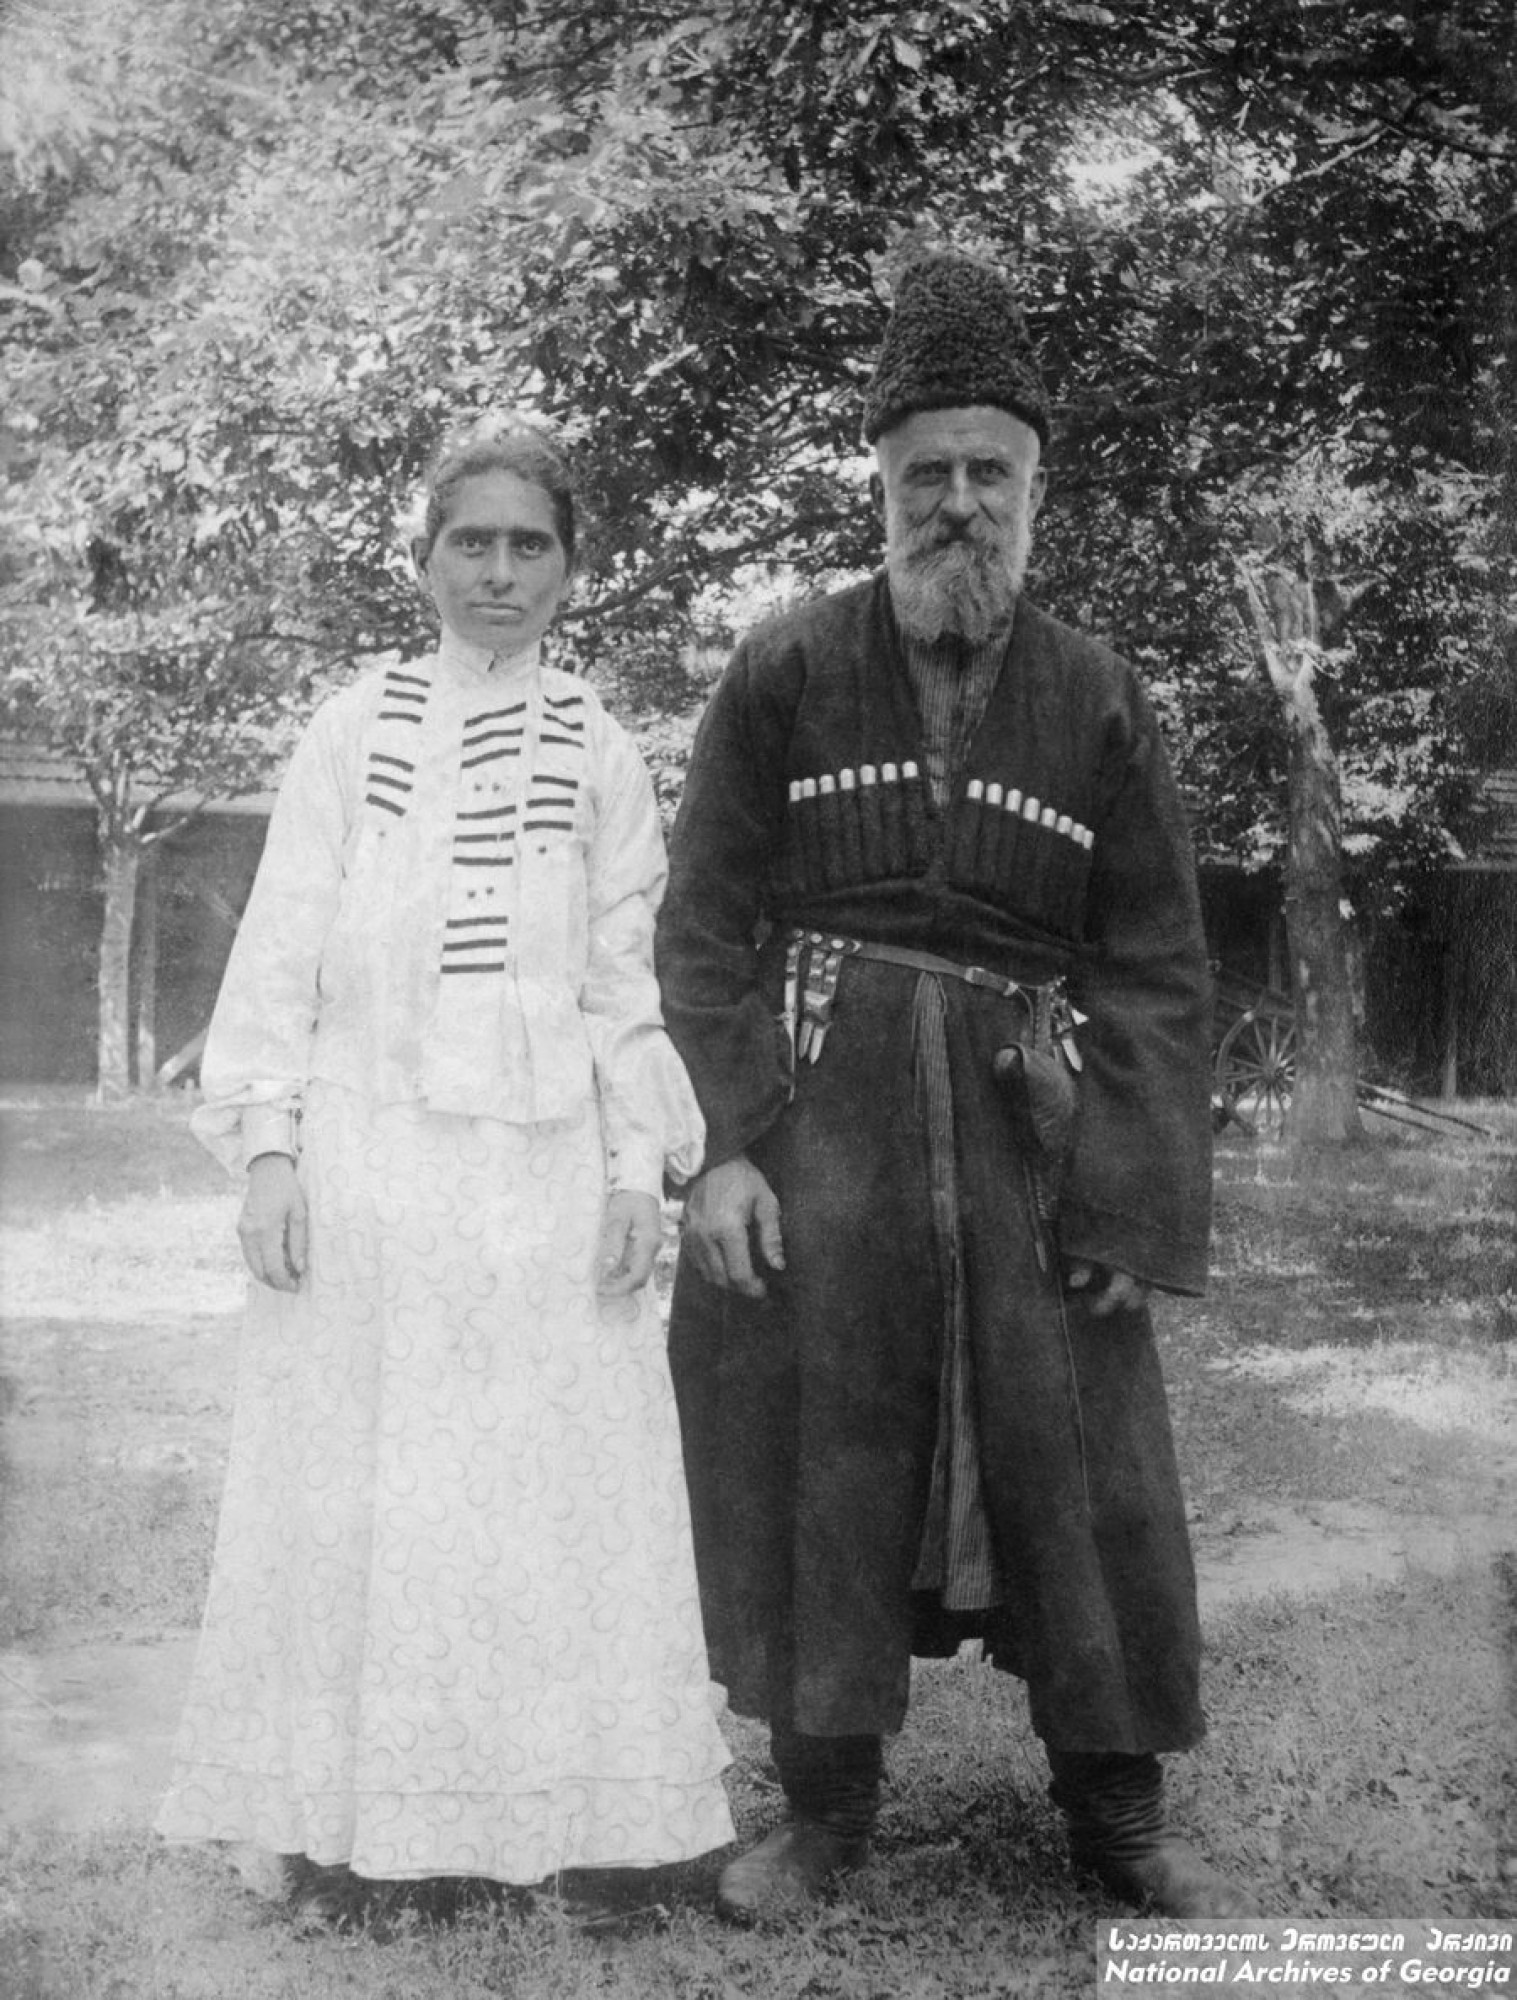 ნიკო ნიკოლაძის მოურავი სიმონ ვაშაკიძე და მისი მეუღლე ელისაბედი. <br>
დიდი ჯიხაიში, სამტრედია. <br>
ფოტო: ნიკო ნიკოლაძე. <br> 
Niko Nikoladze’s house manager and his wife Elisabeth.  <br>
Didi Jikhaishi, Samtredia, Georgia. <br>
Photo: Niko Nikoladze.  <br>